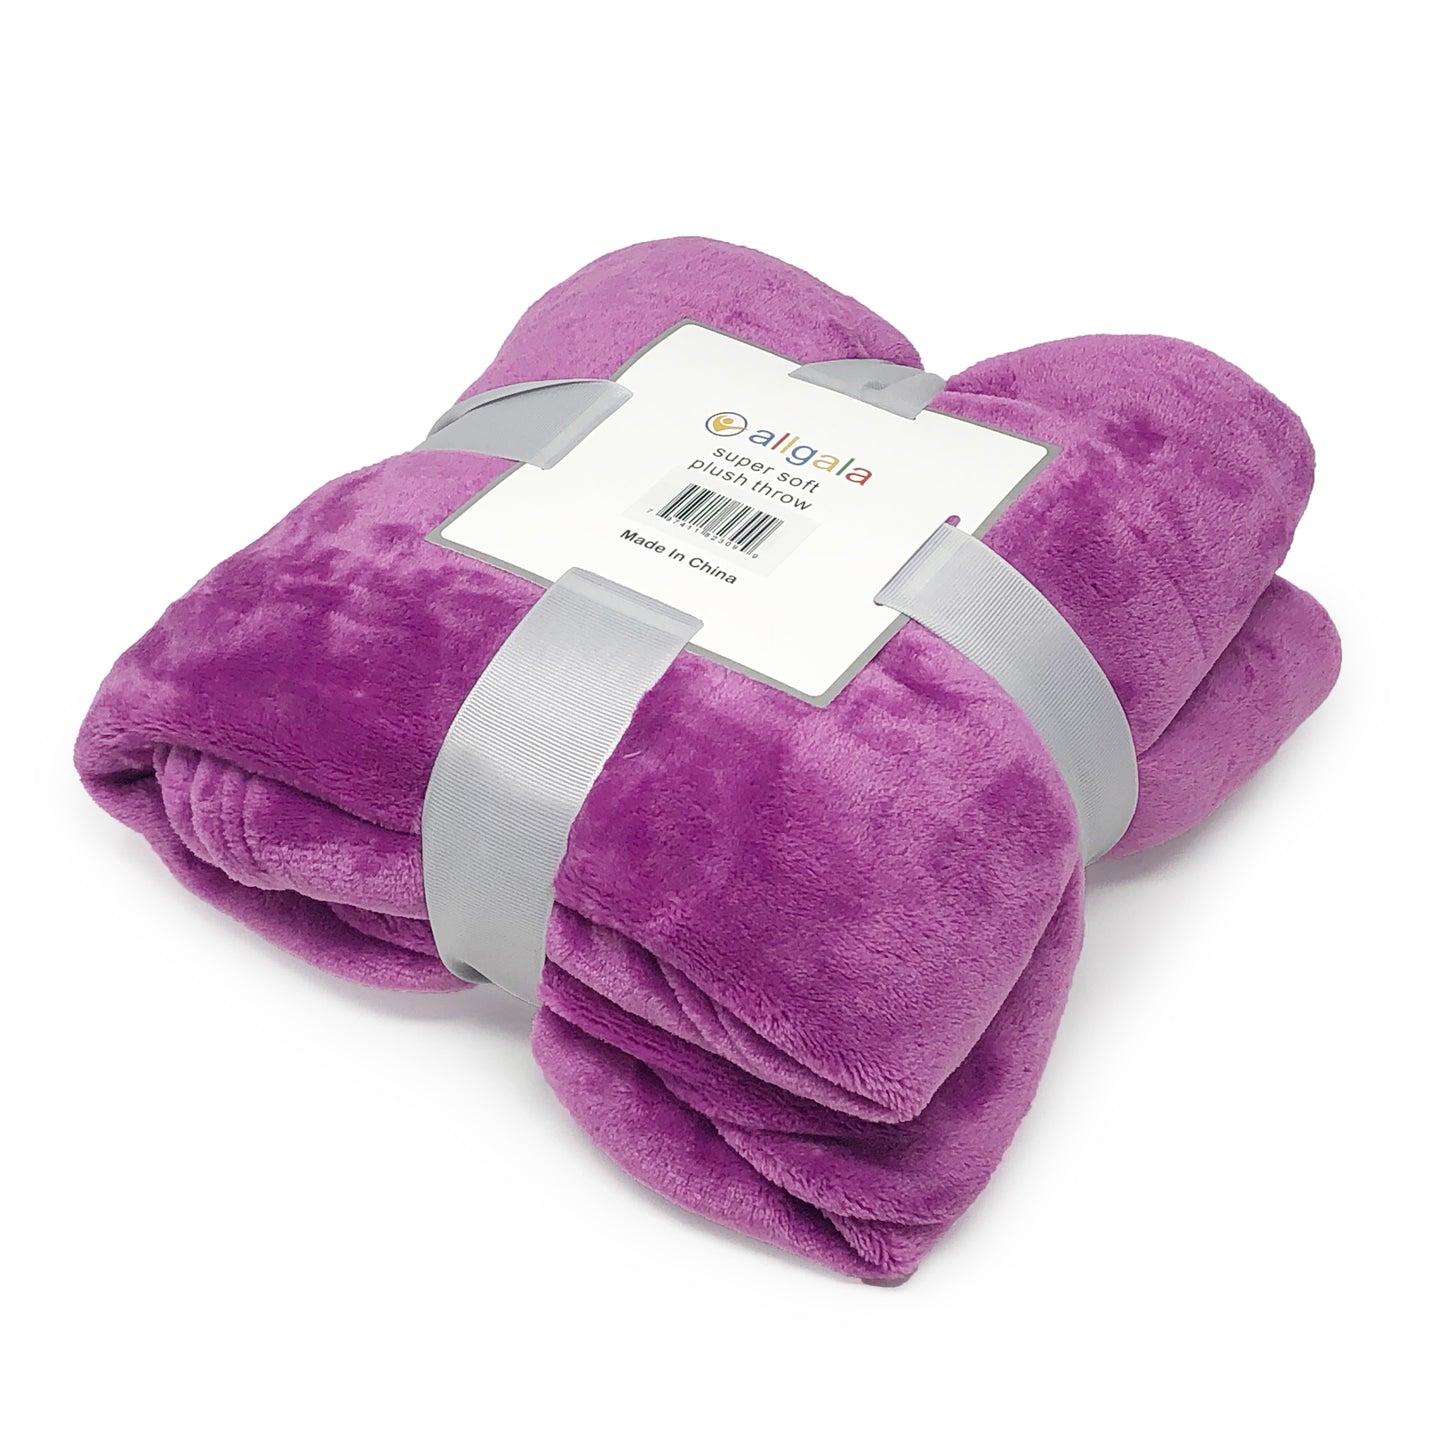 Blanket 60x45 Super Soft Flannel Plush Light Weight Throw Blanket